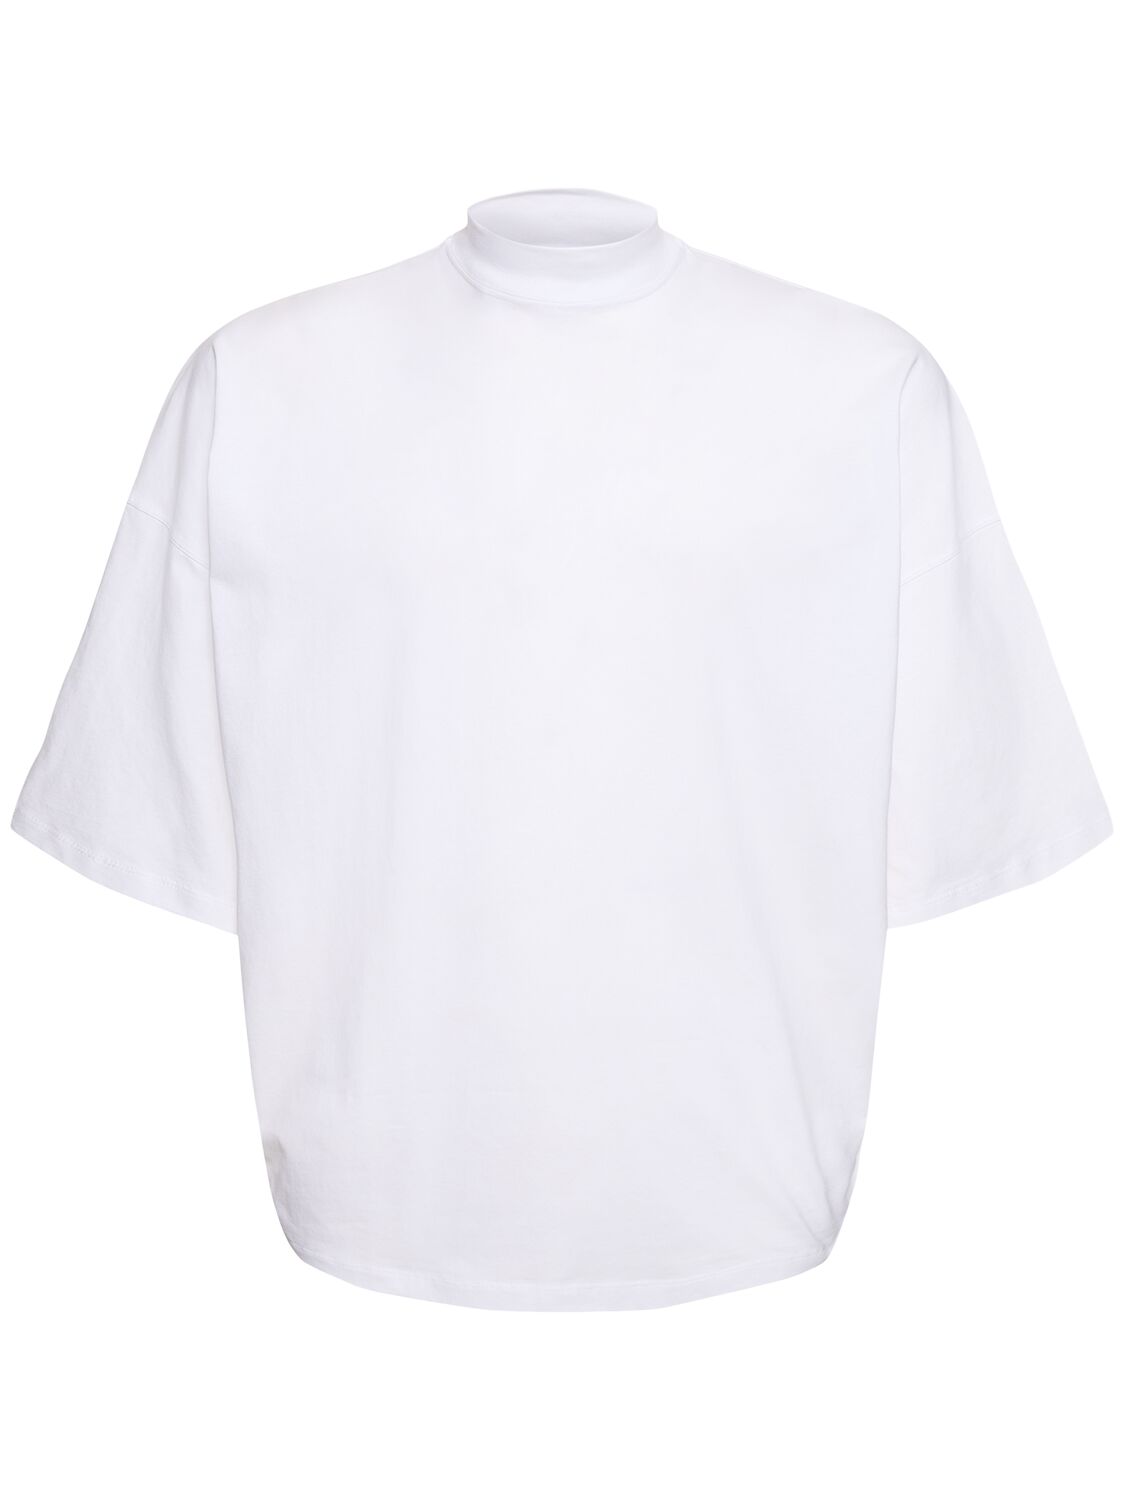 Image of Boxy Fit Cotton Jersey T-shirt